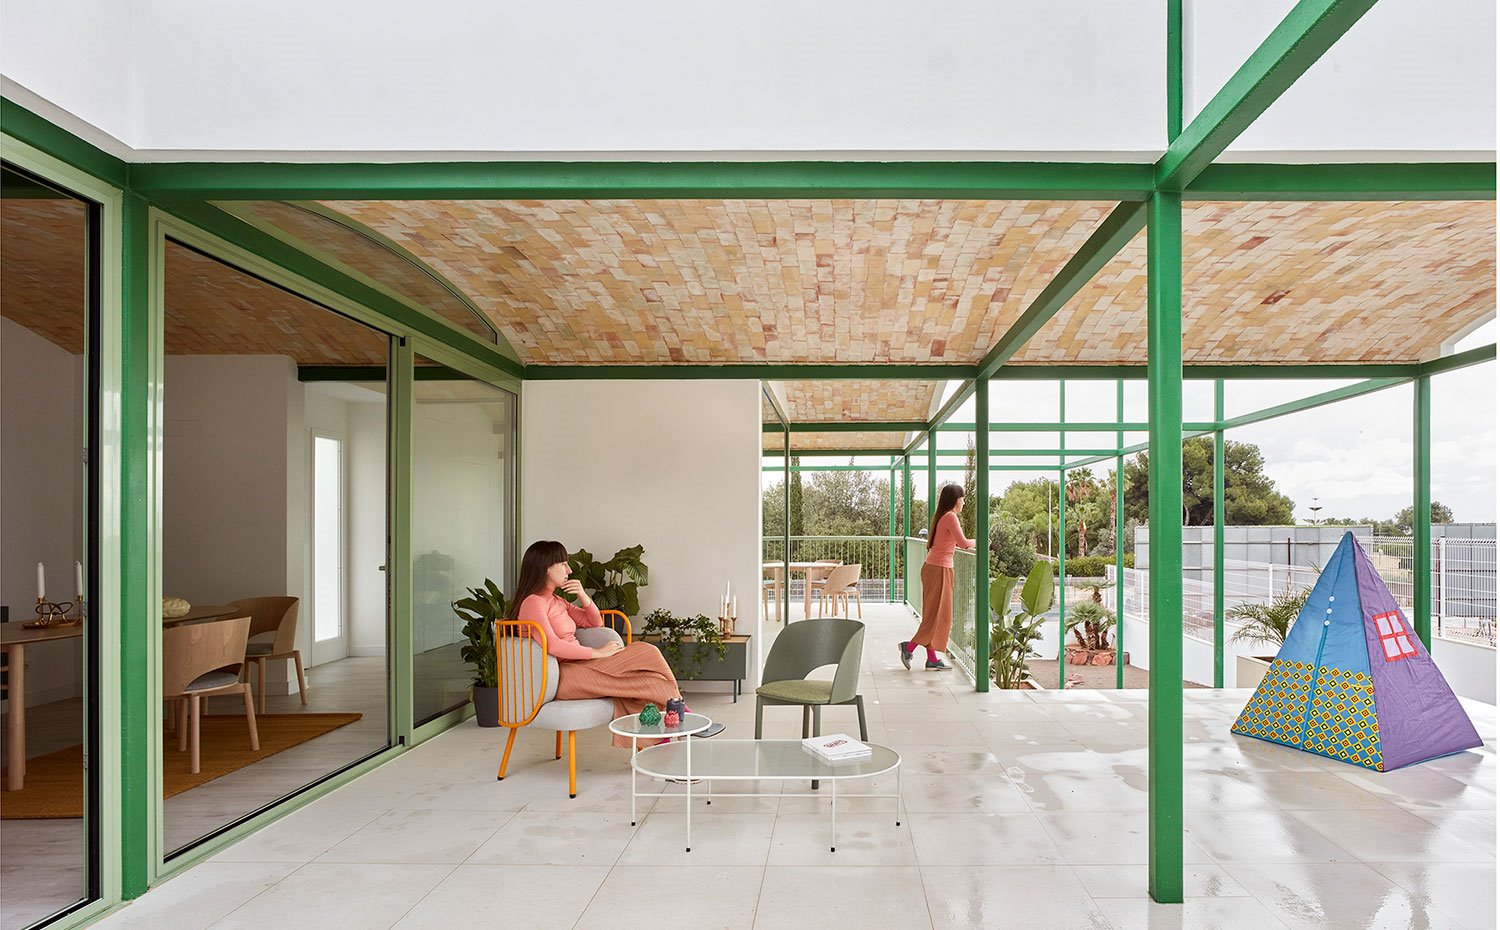 Terraza exterior con mobiliario en verdes y naranjas, cubierta con bóveda catalana